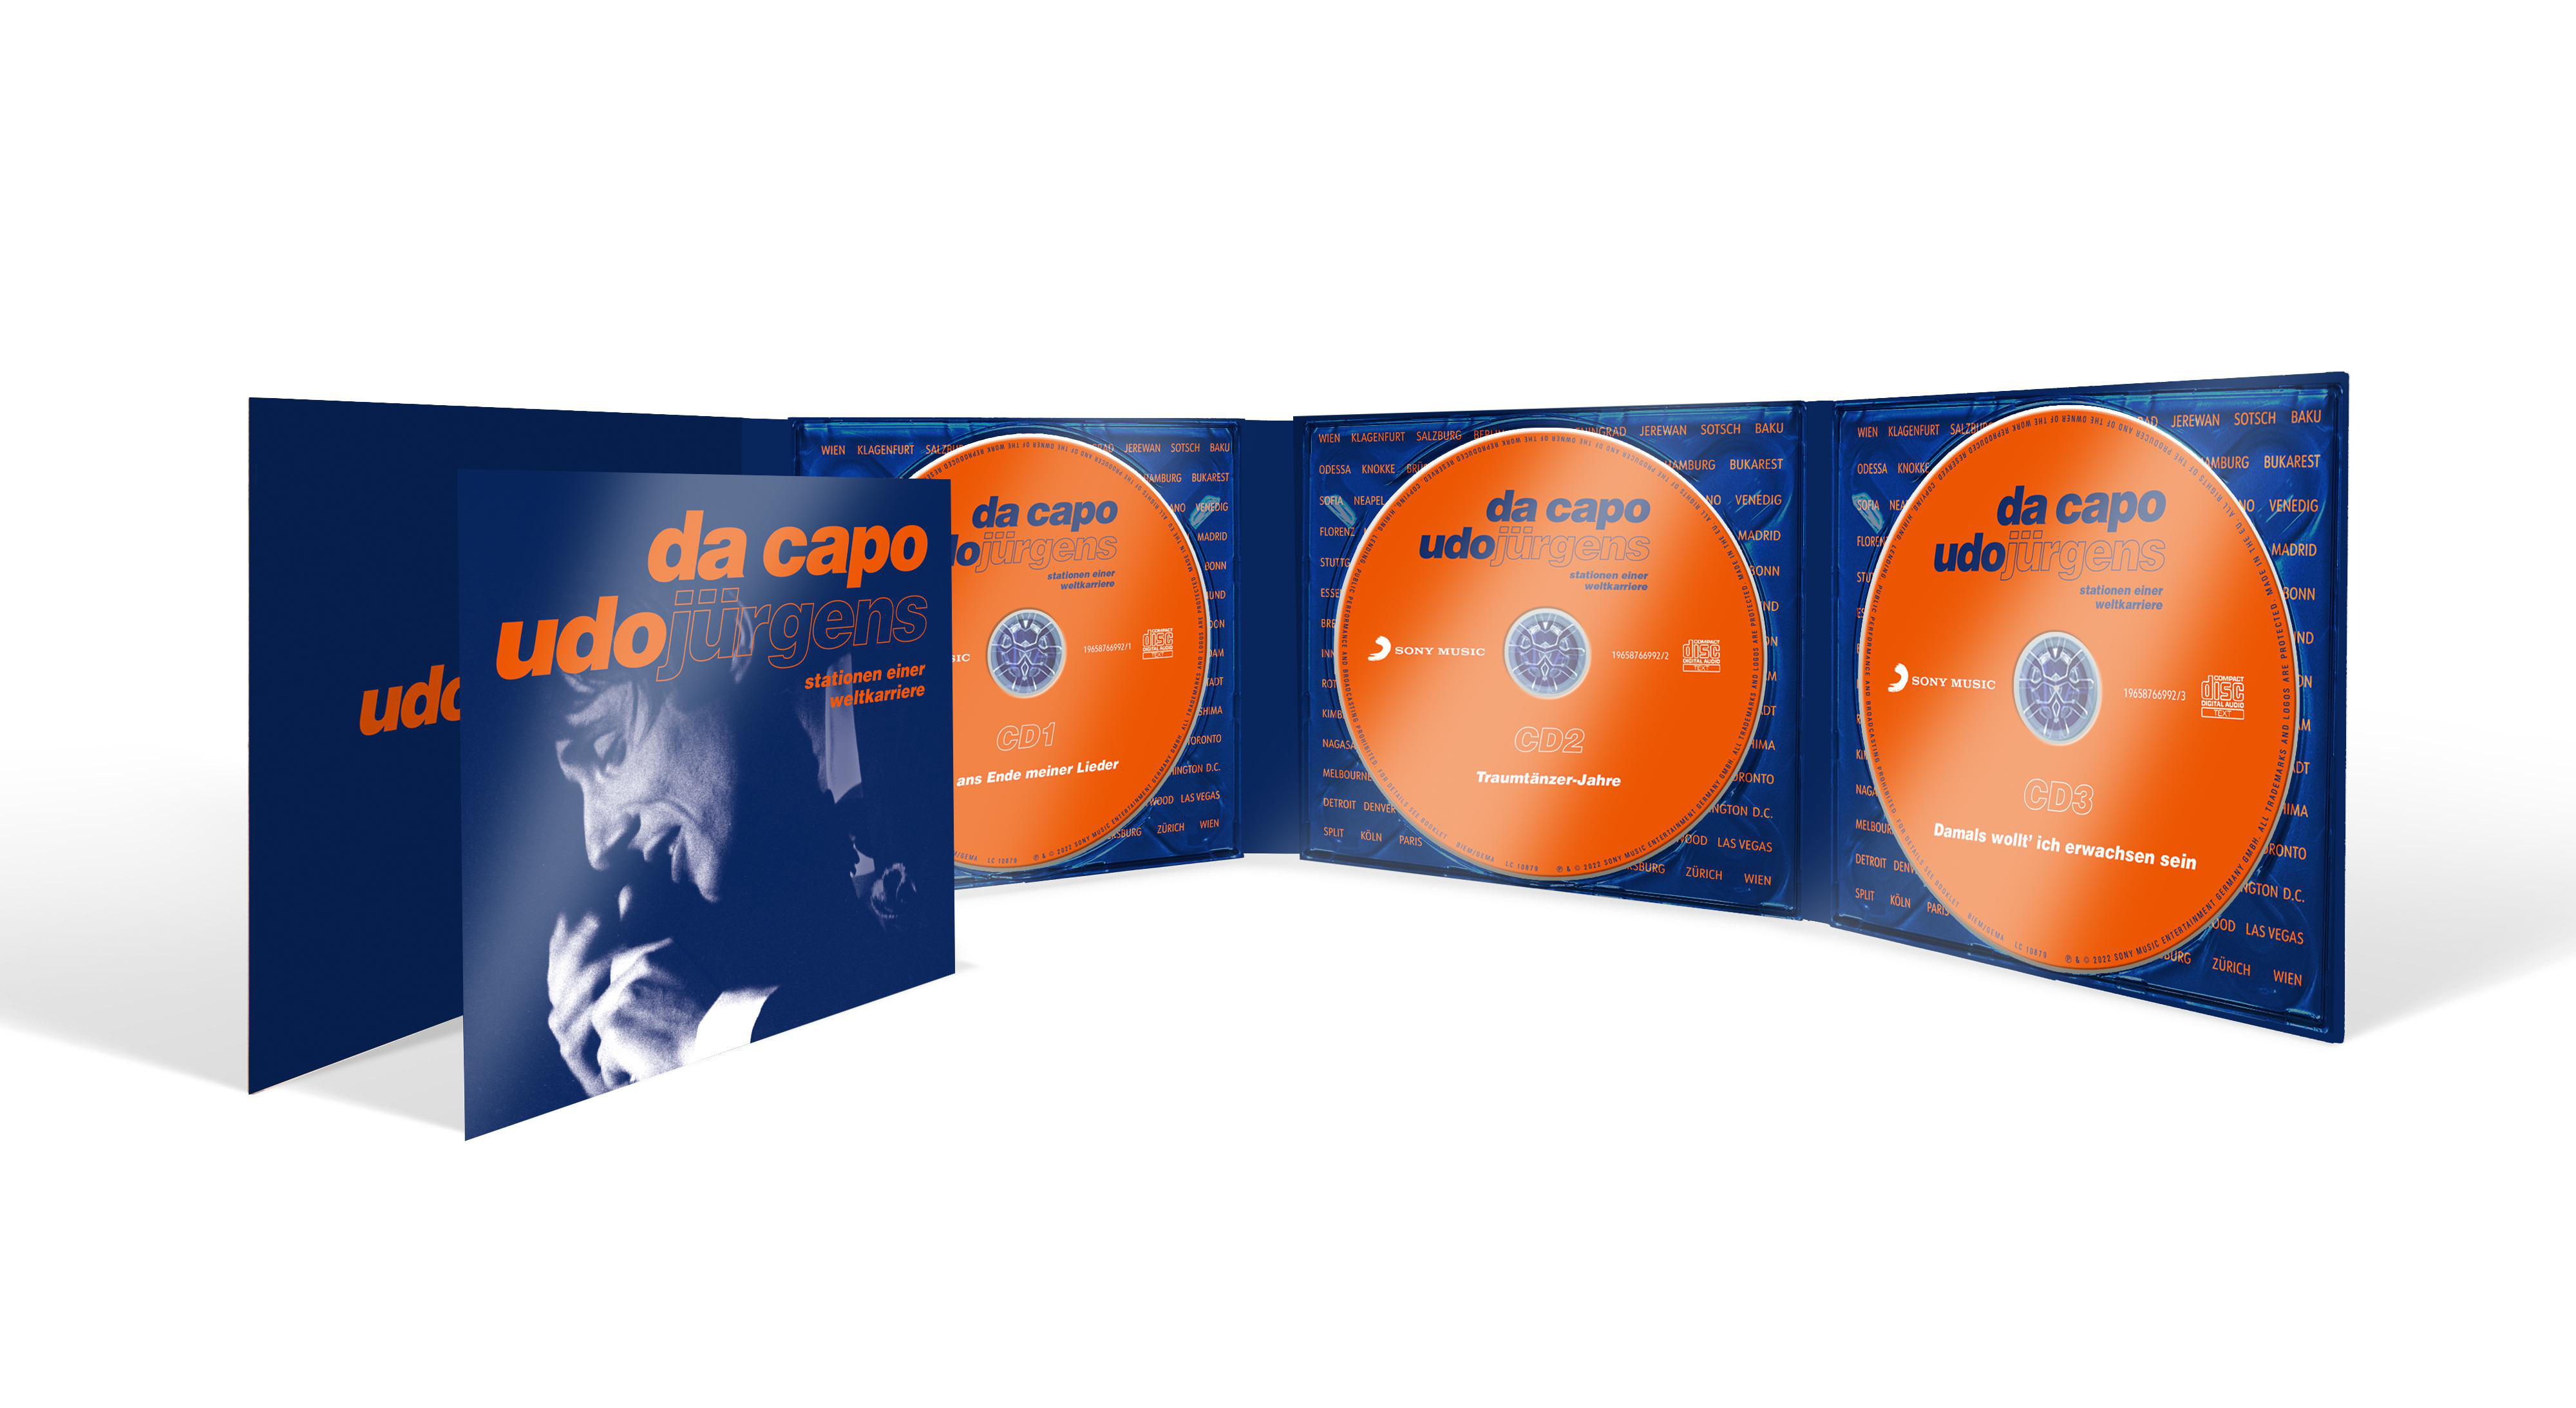 Capo Weltkarriere Udo Da Jürgens - - Einer (CD) - Stationen